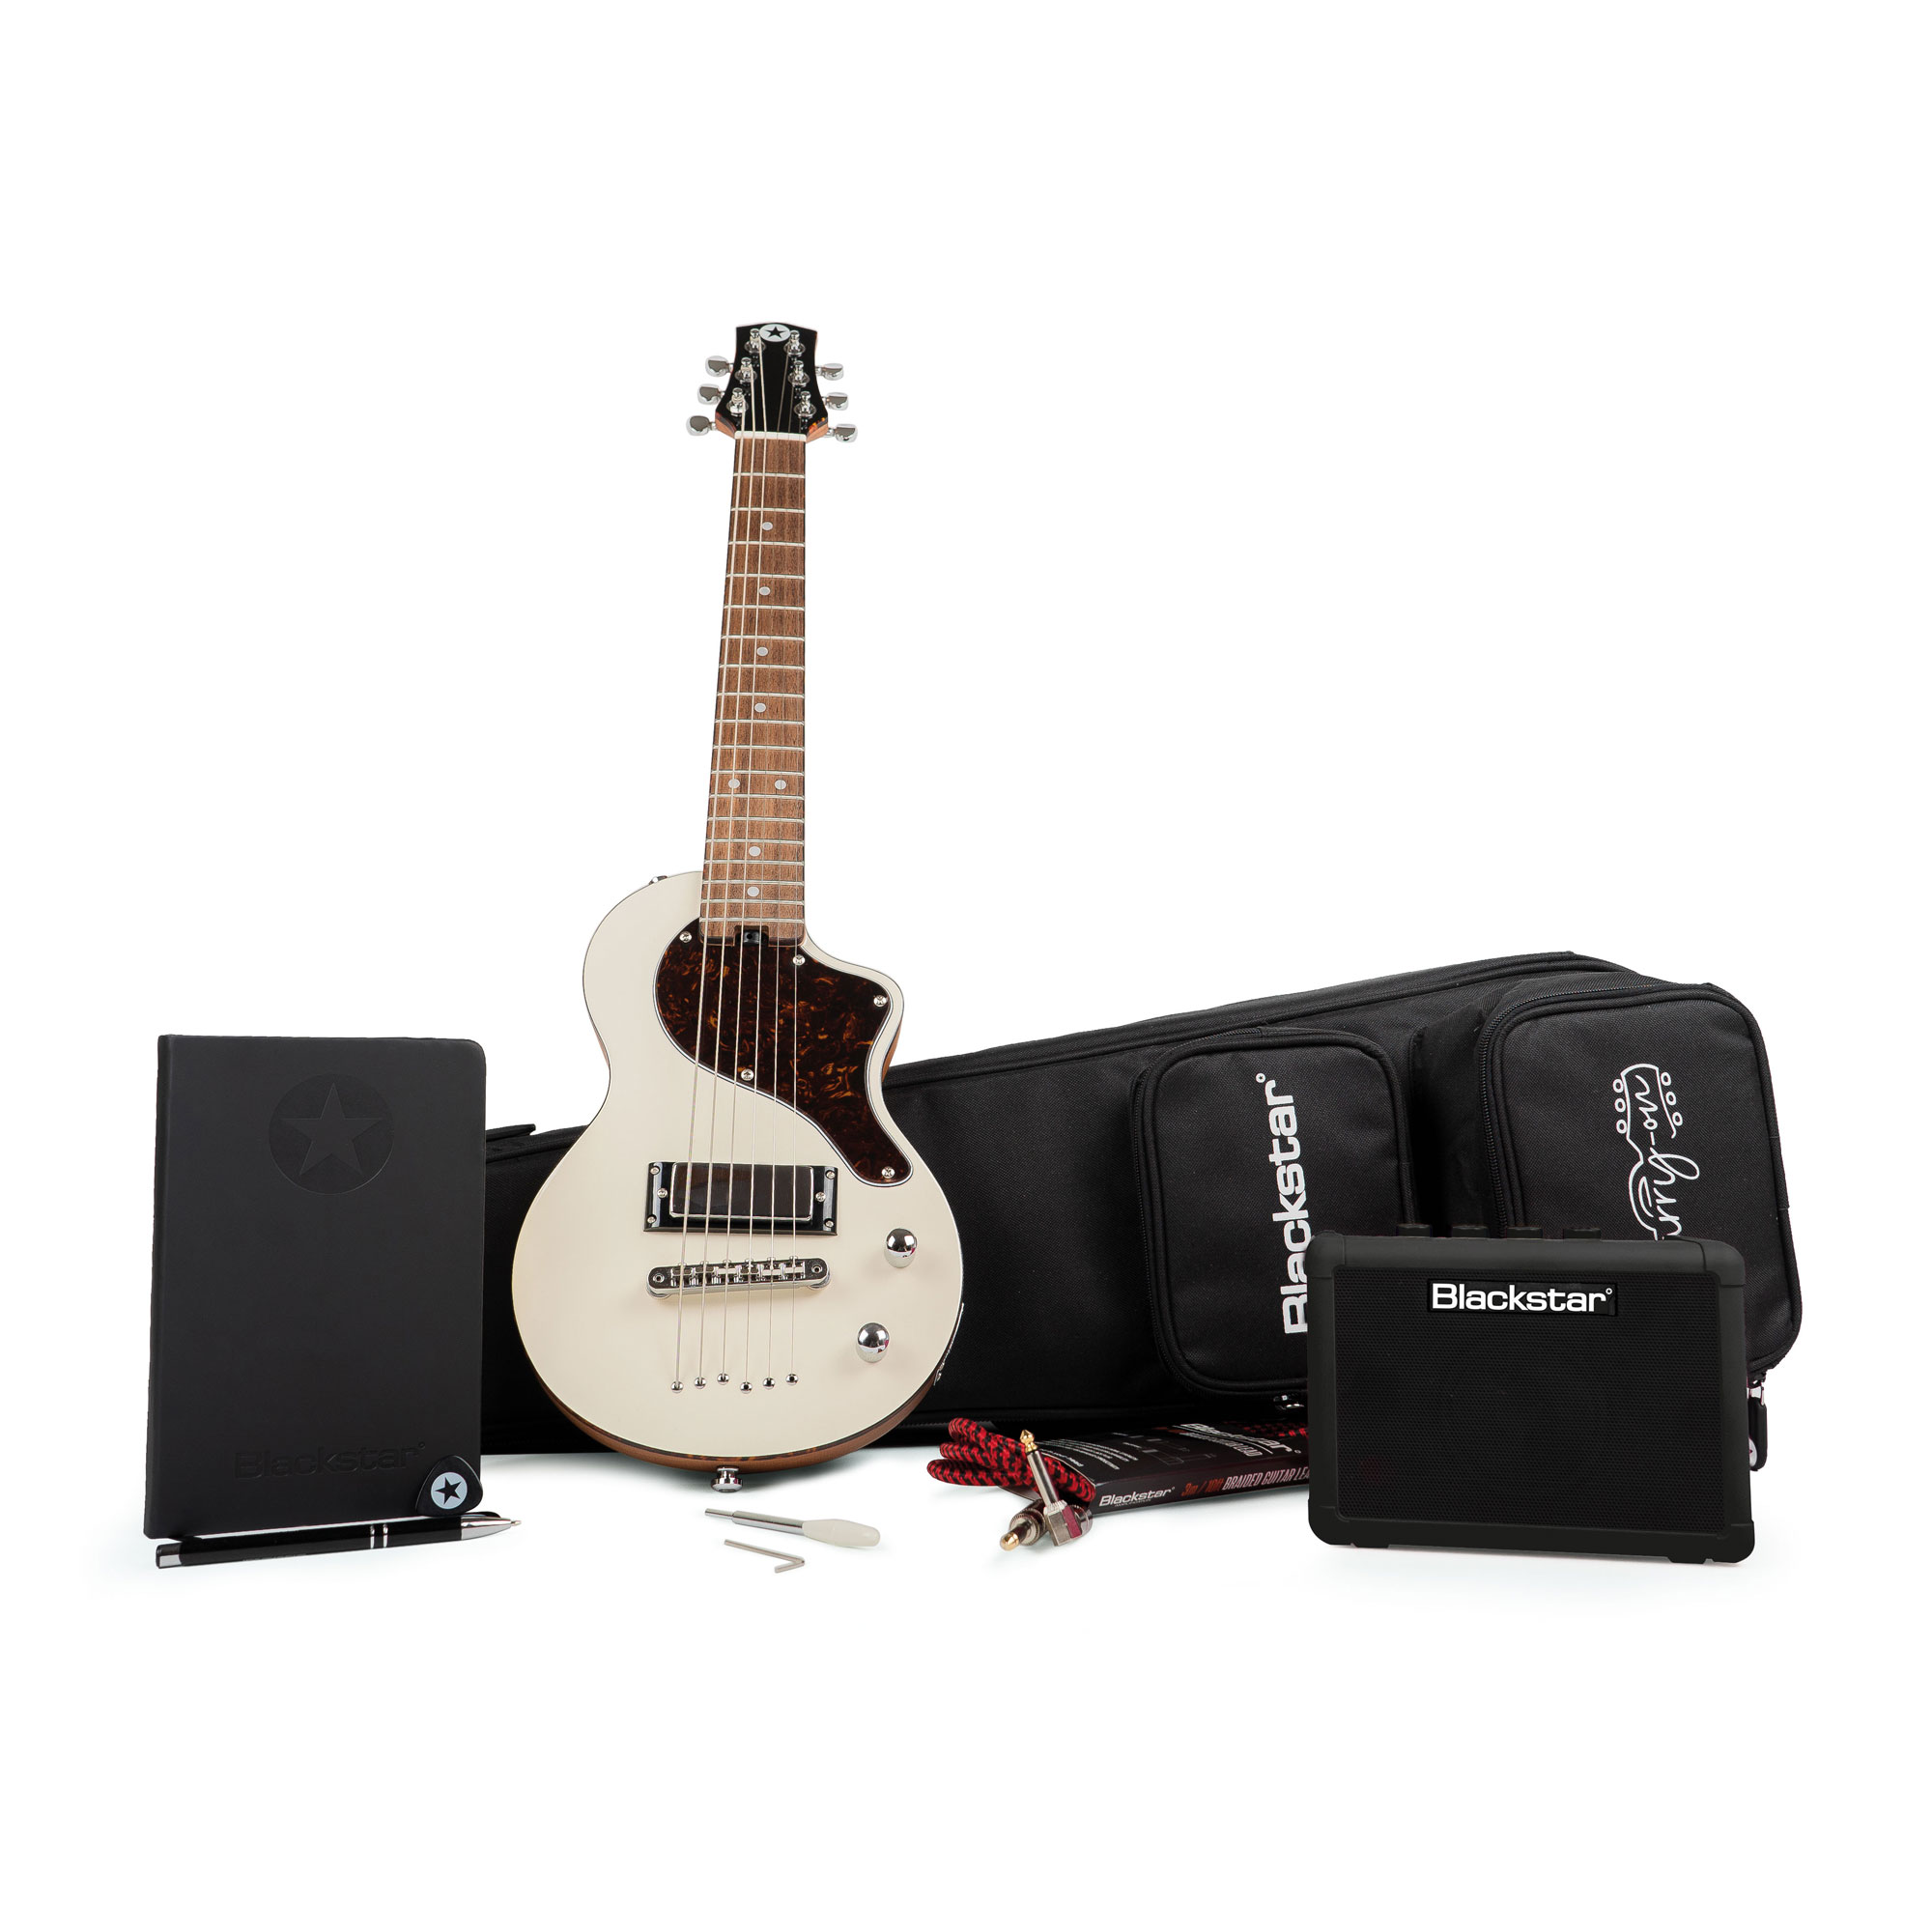 Køb Blackstar Carry-on Deluxe Travel Guitar Pack - Hvid - Pris 3395.00 kr.